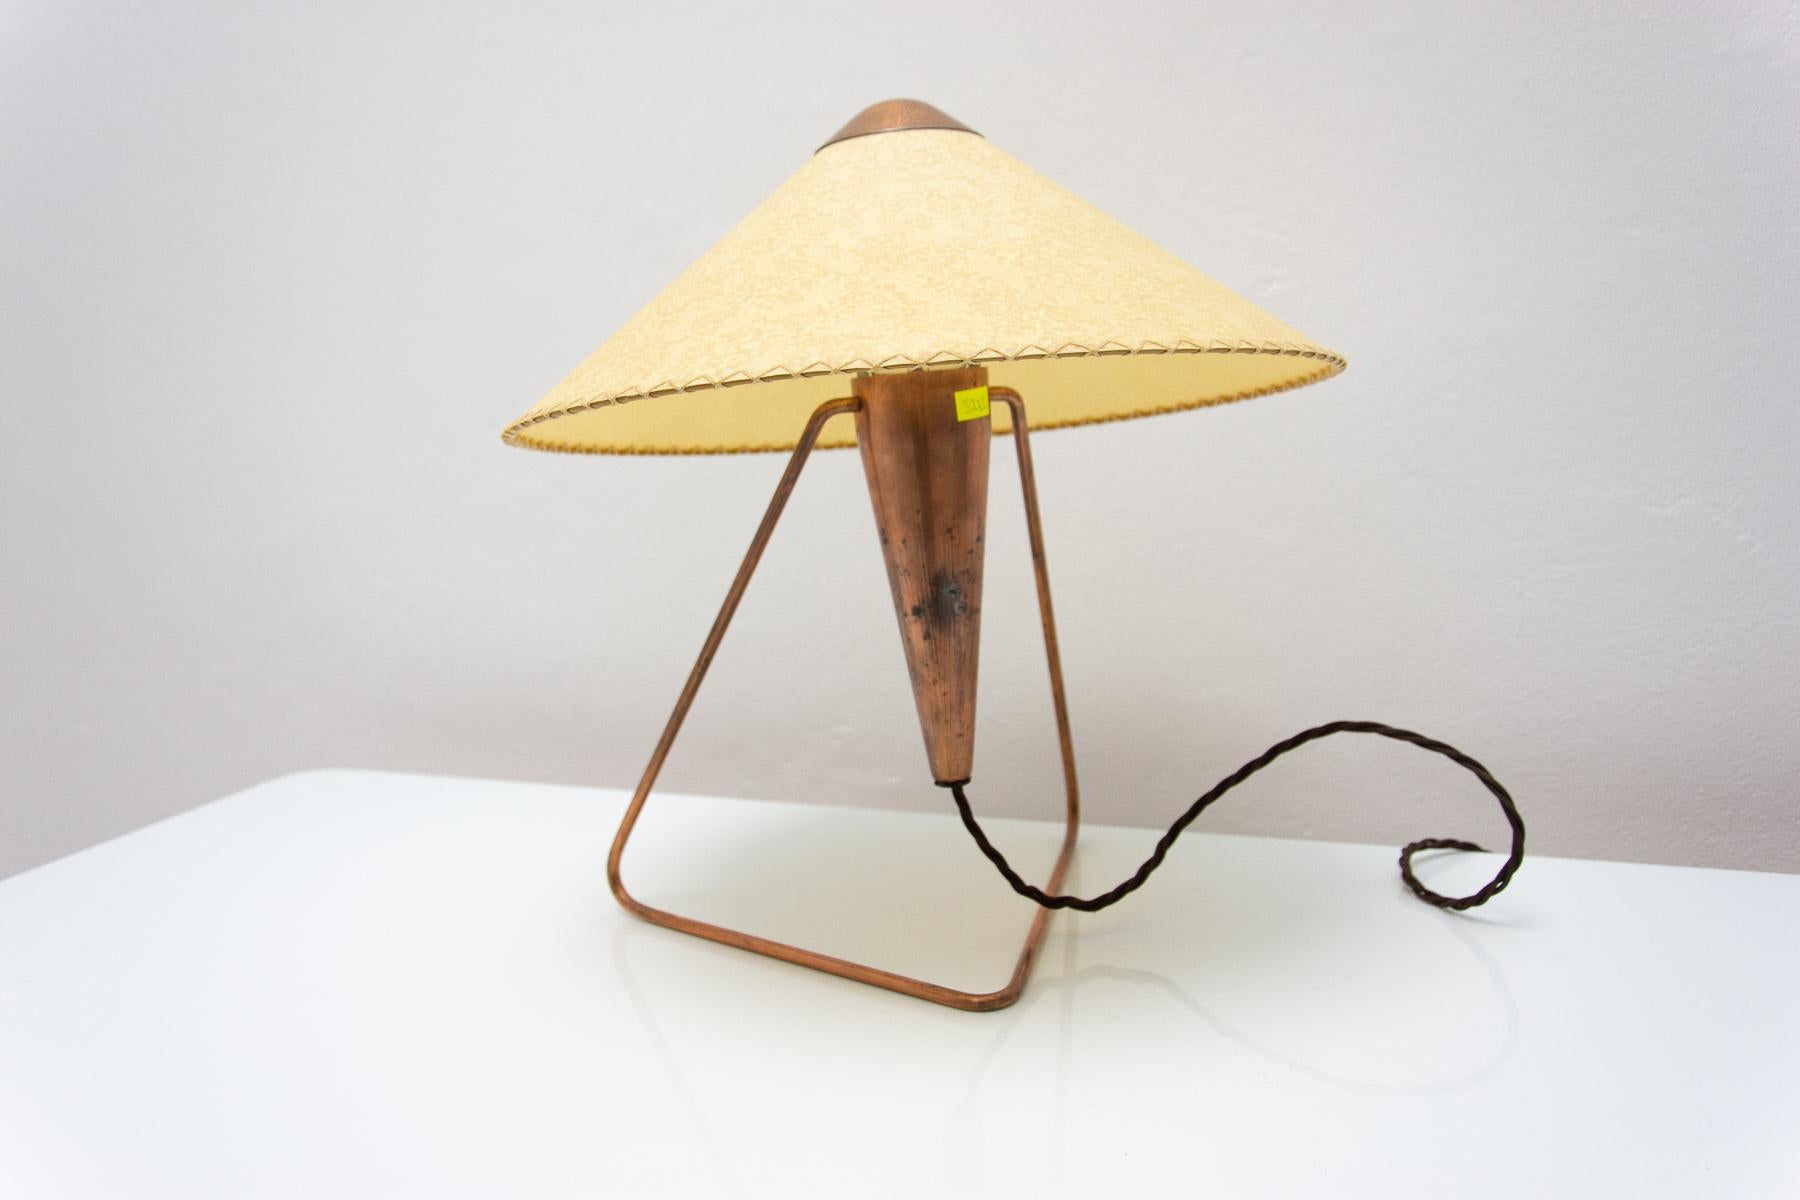  Czech mid century modern tripod desk lamp by Helena Frantova for Okolo, Czech. 1